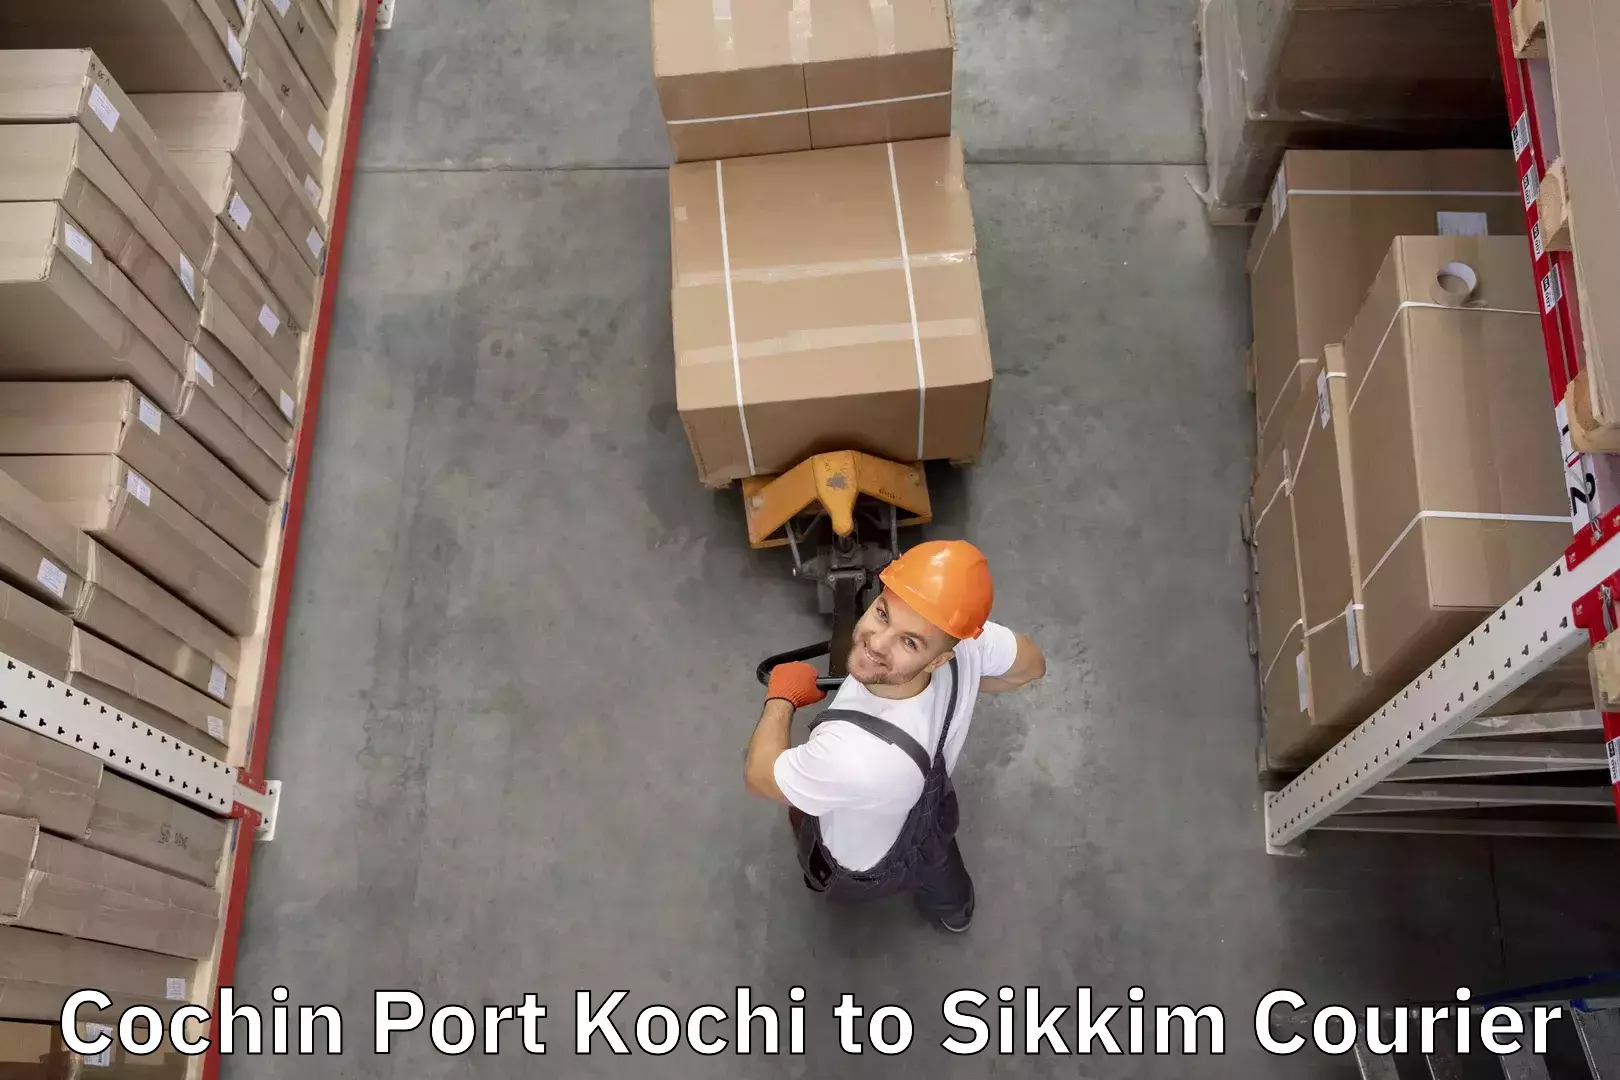 Door-to-door baggage service Cochin Port Kochi to South Sikkim